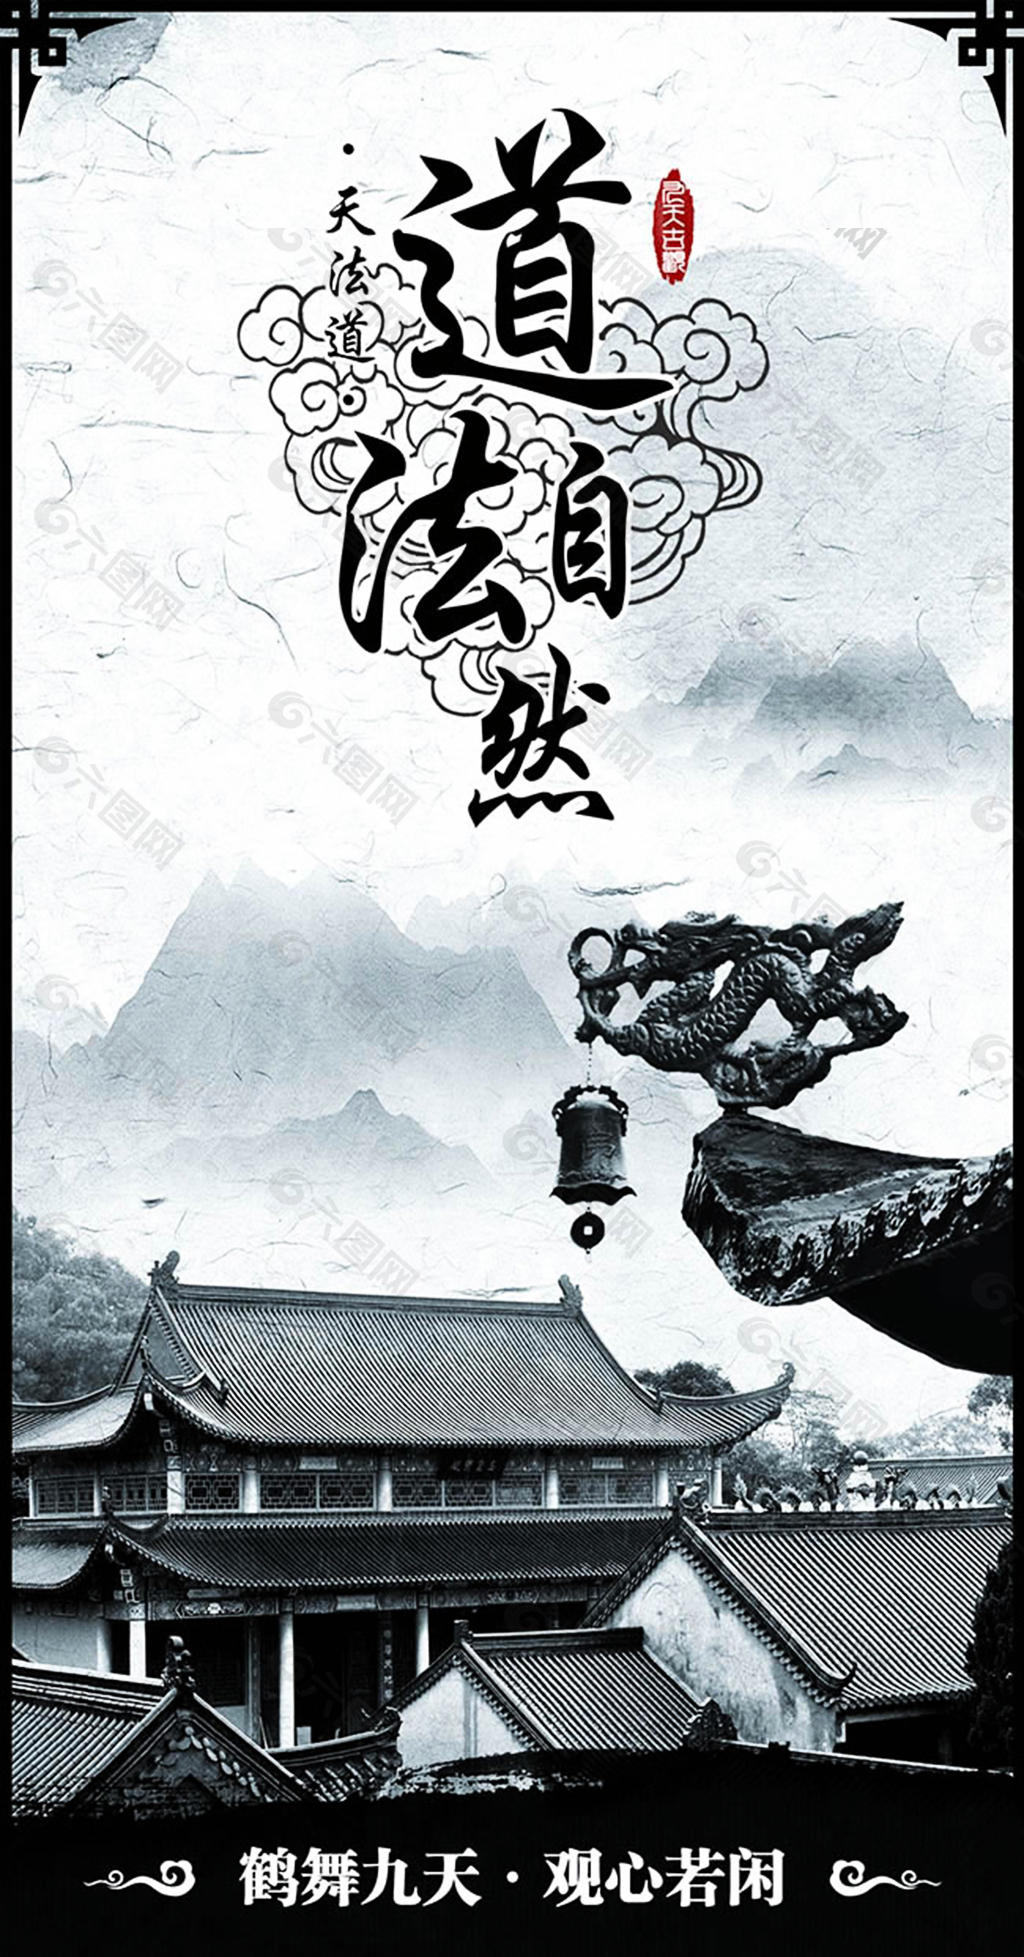 中国风道法自然企业文化海报psd素材